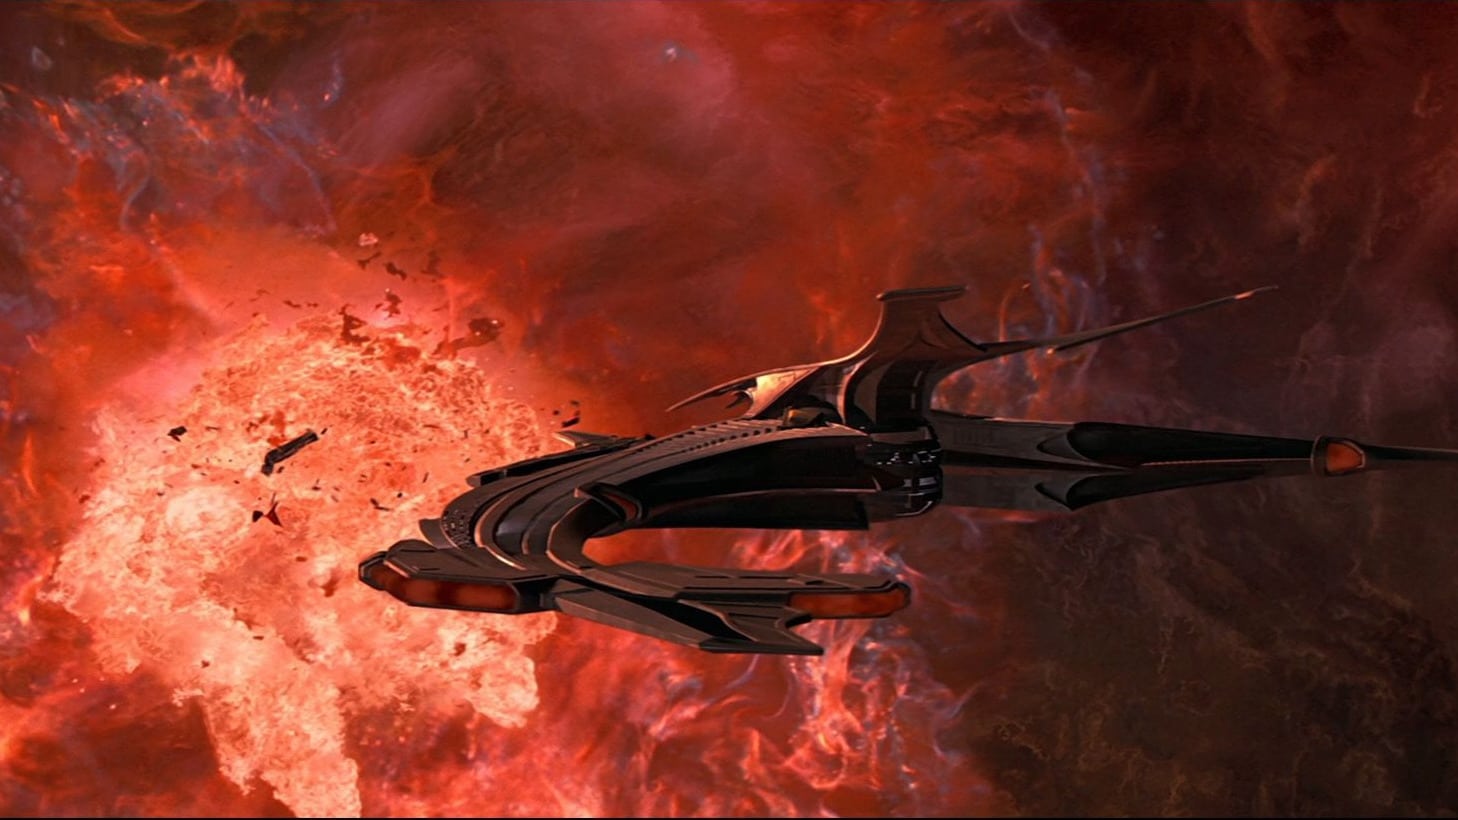 Star Trek: Insurrección